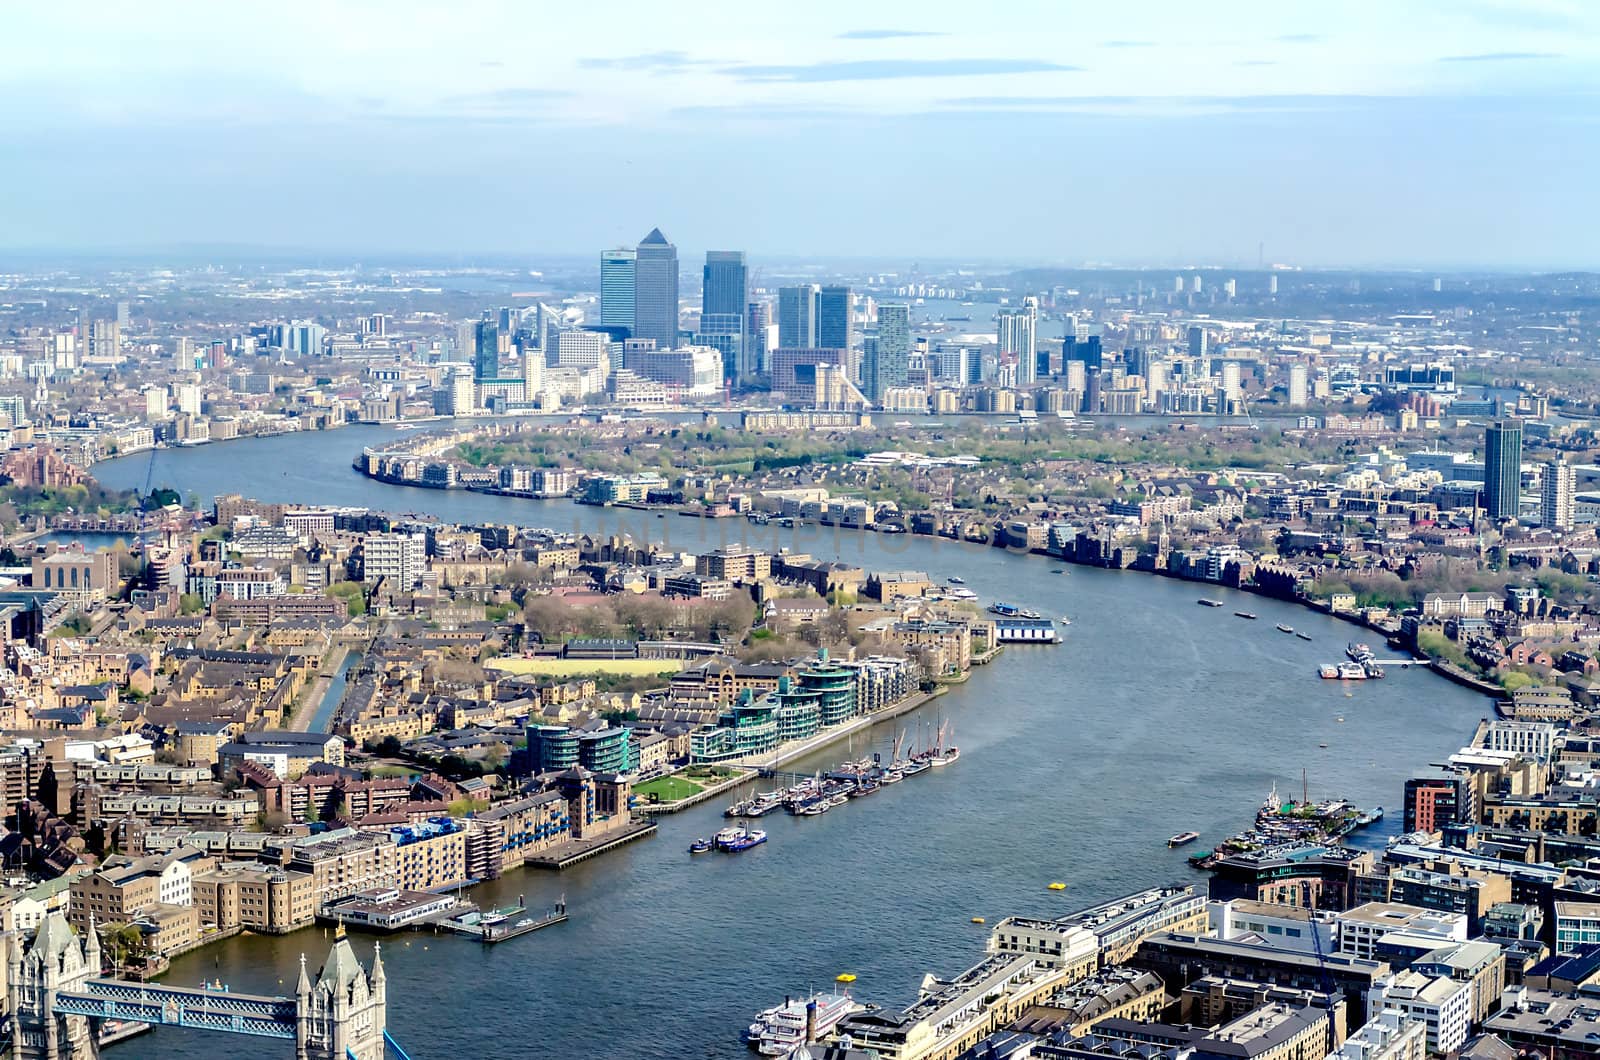 Panoramic View of London by marcorubino